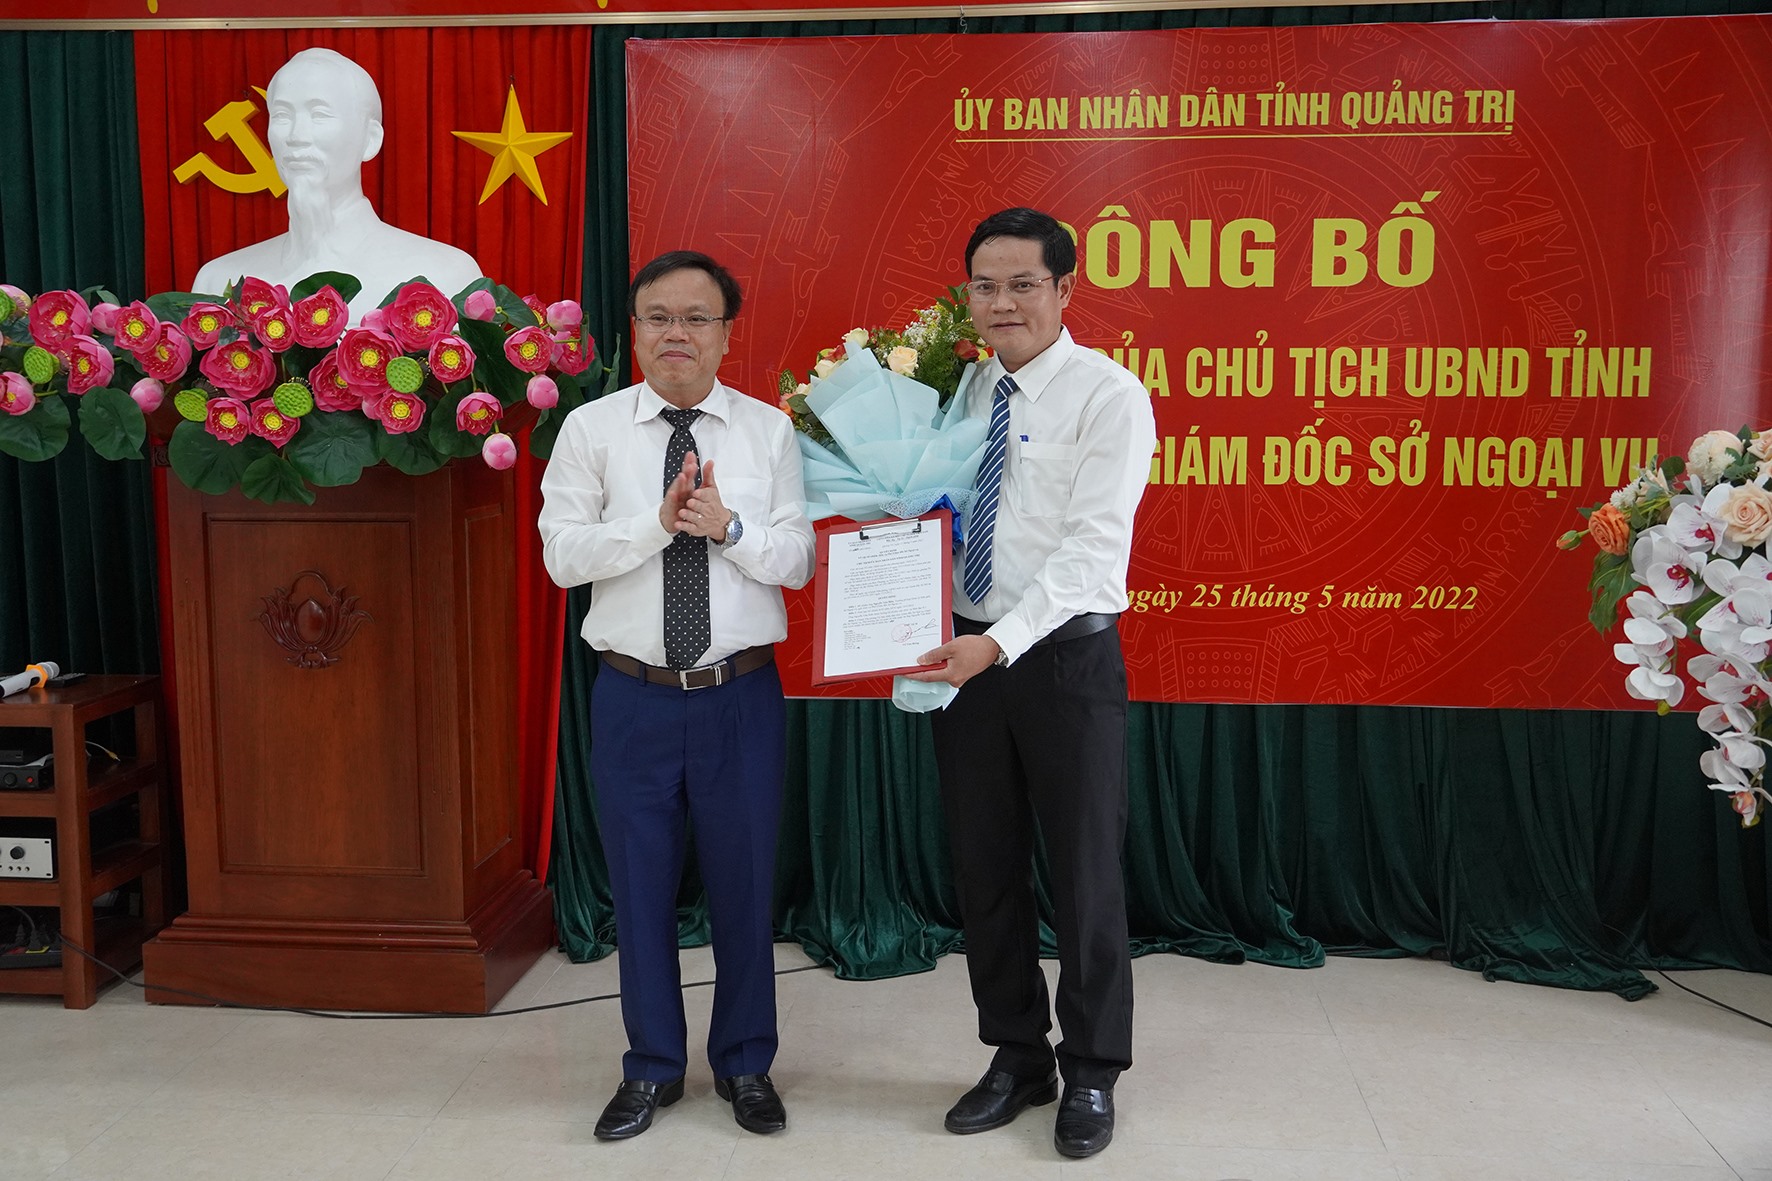 Phó Chủ tịch UBND tỉnh Lê Đức Tiến trao quyết định bổ nhiệm cho Phó Giám đốc Sở Ngoại vụ Nguyễn Văn Biên  -Ảnh: Hồng Hà